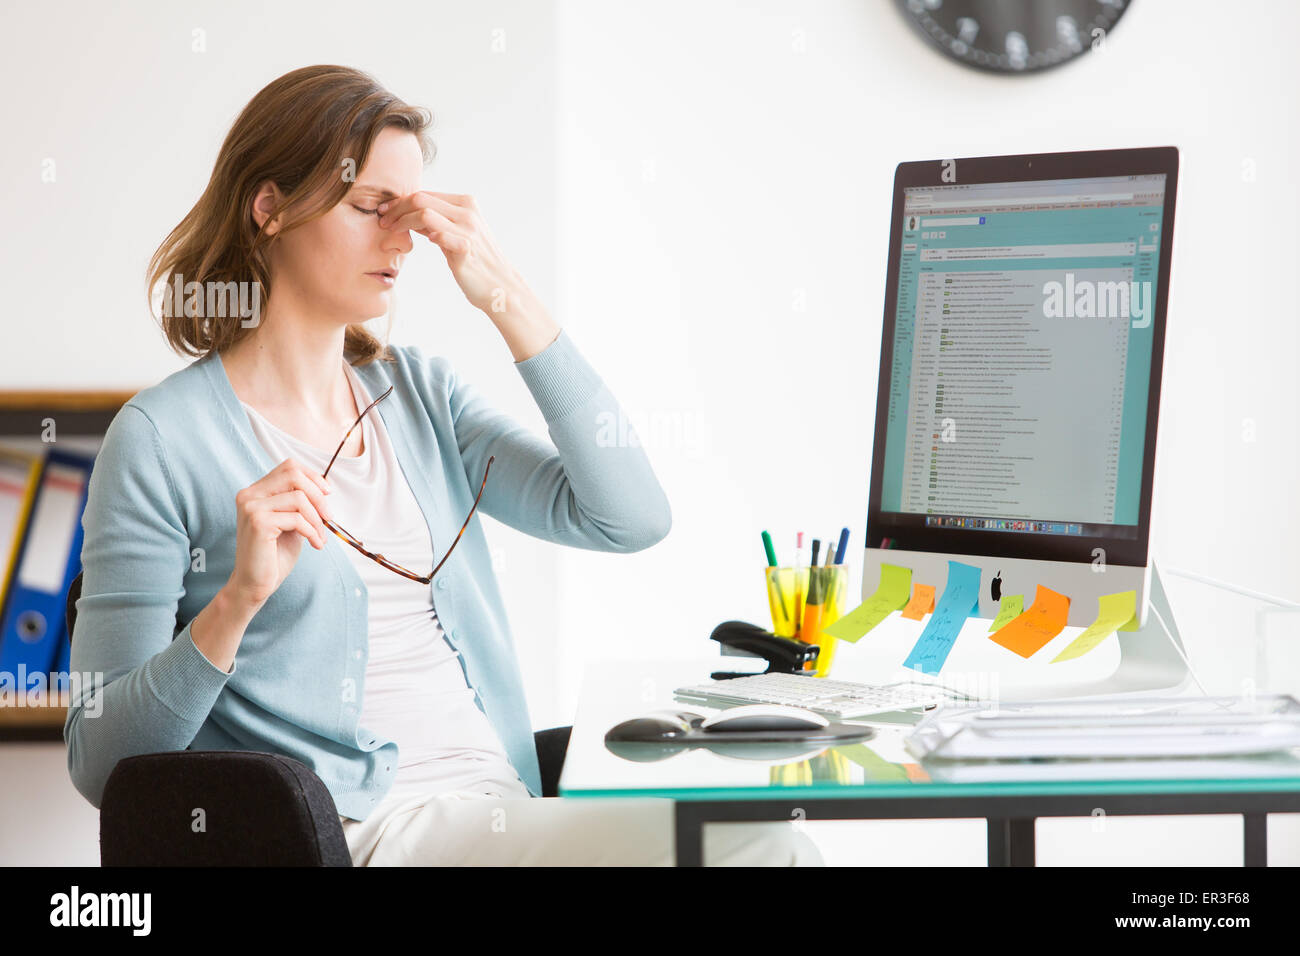 La mujer en el trabajo, sufren de dolor de cabeza. Foto de stock